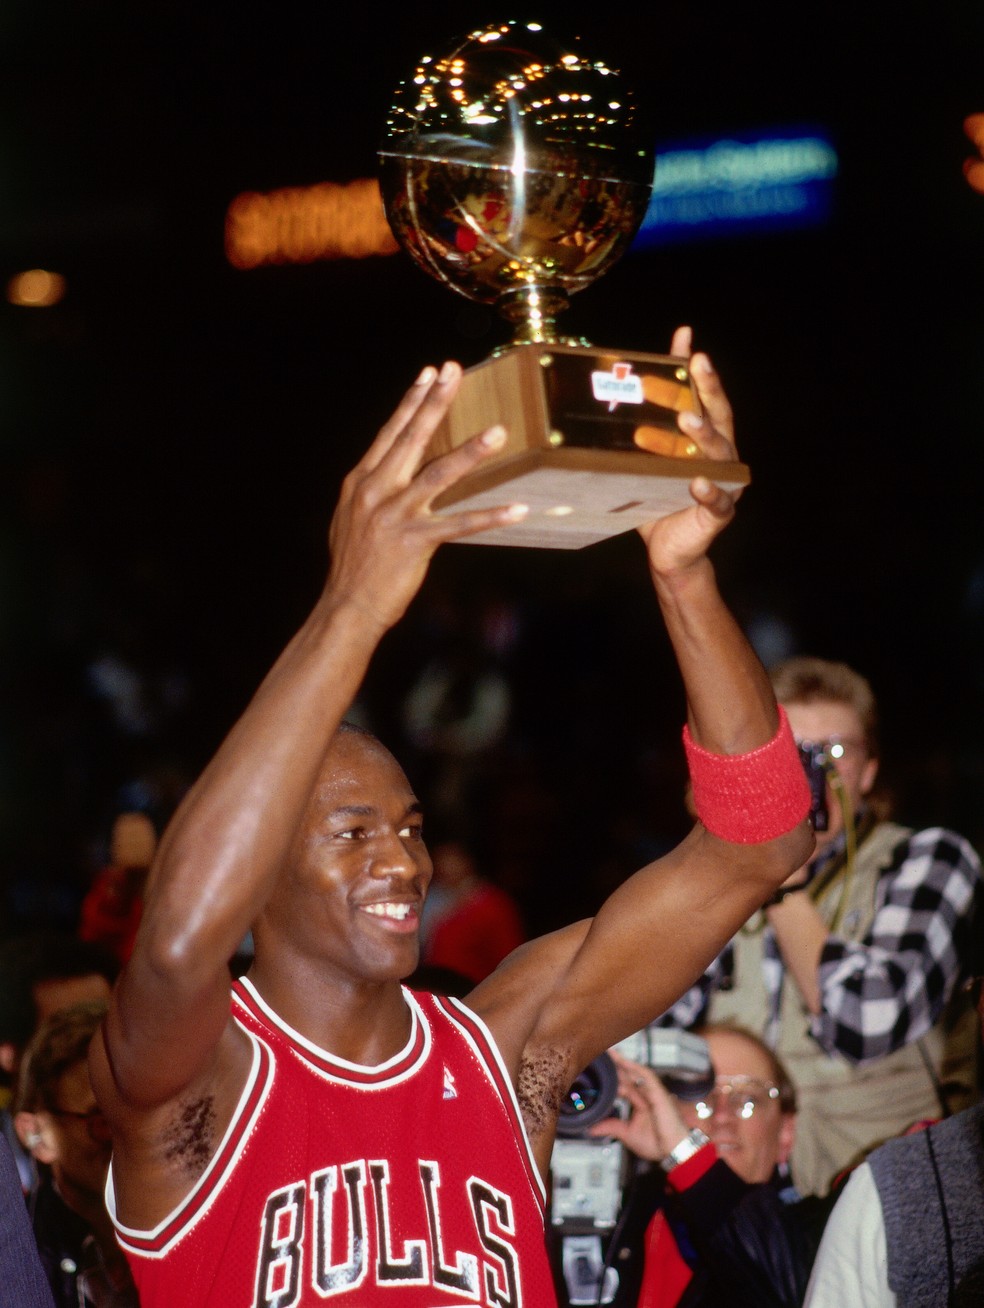 Michael Jordan: histórico de conquistas, recordes e tudo sobre a